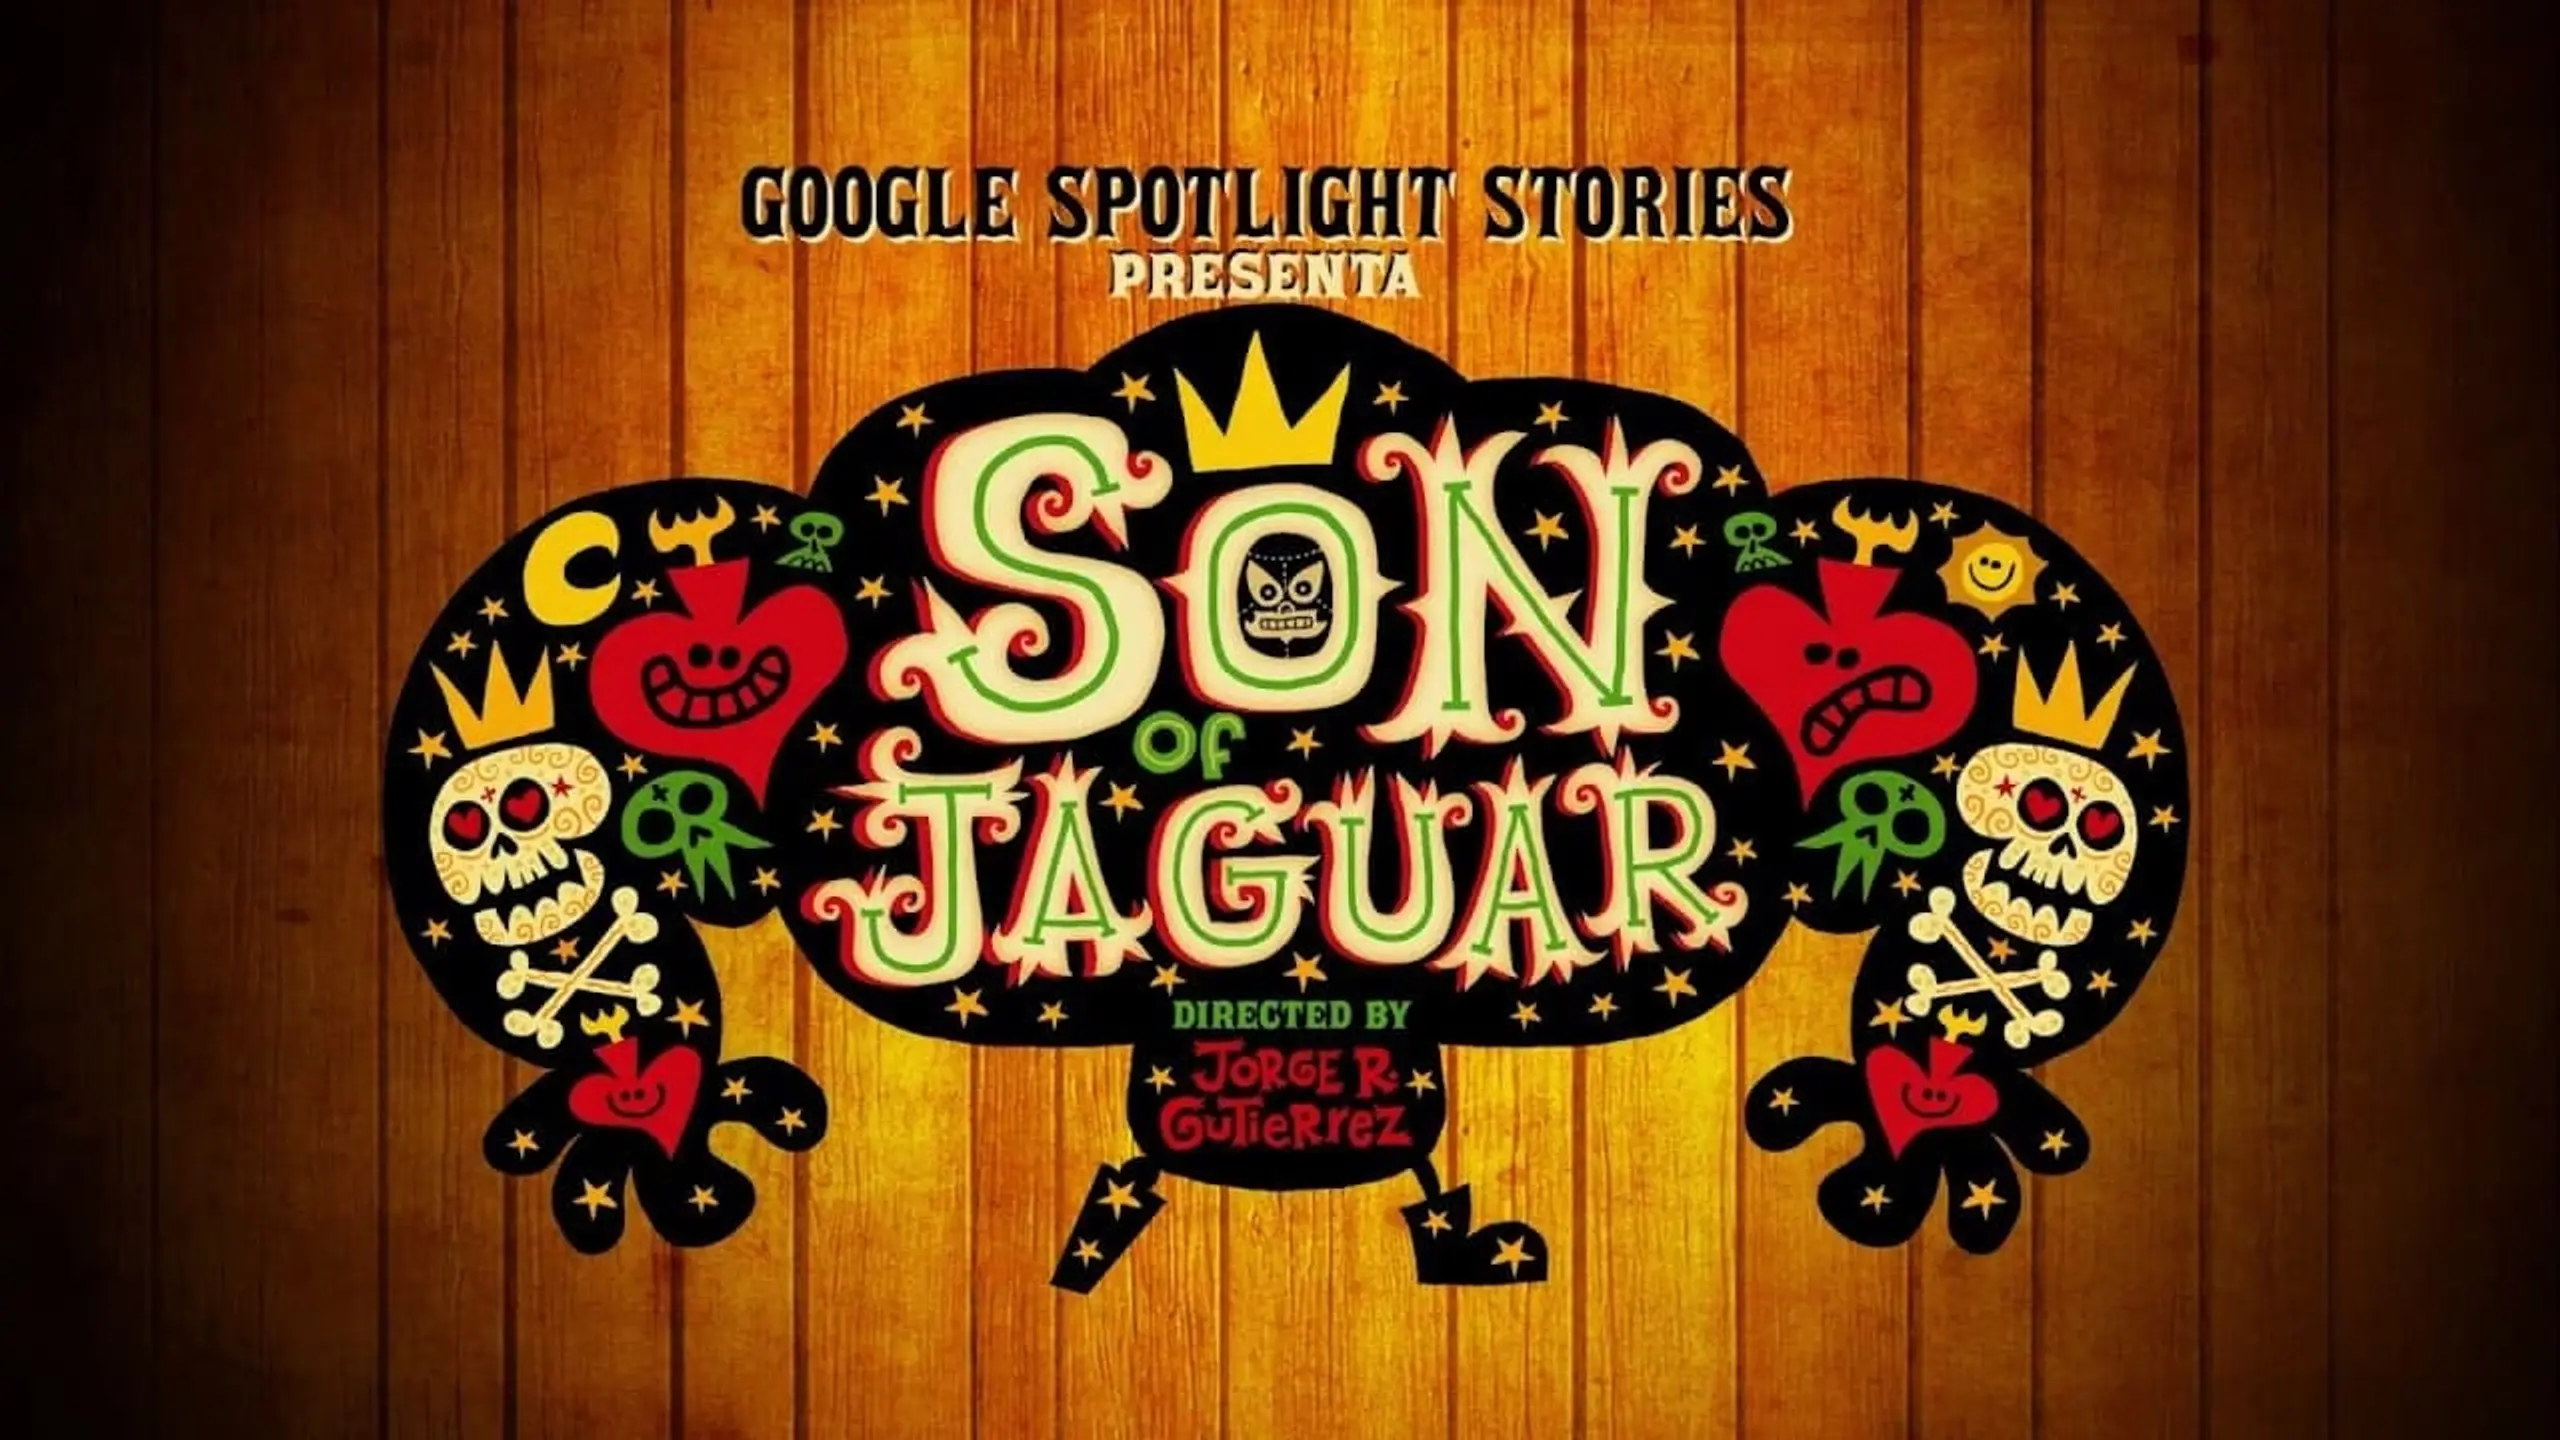 Son of Jaguar